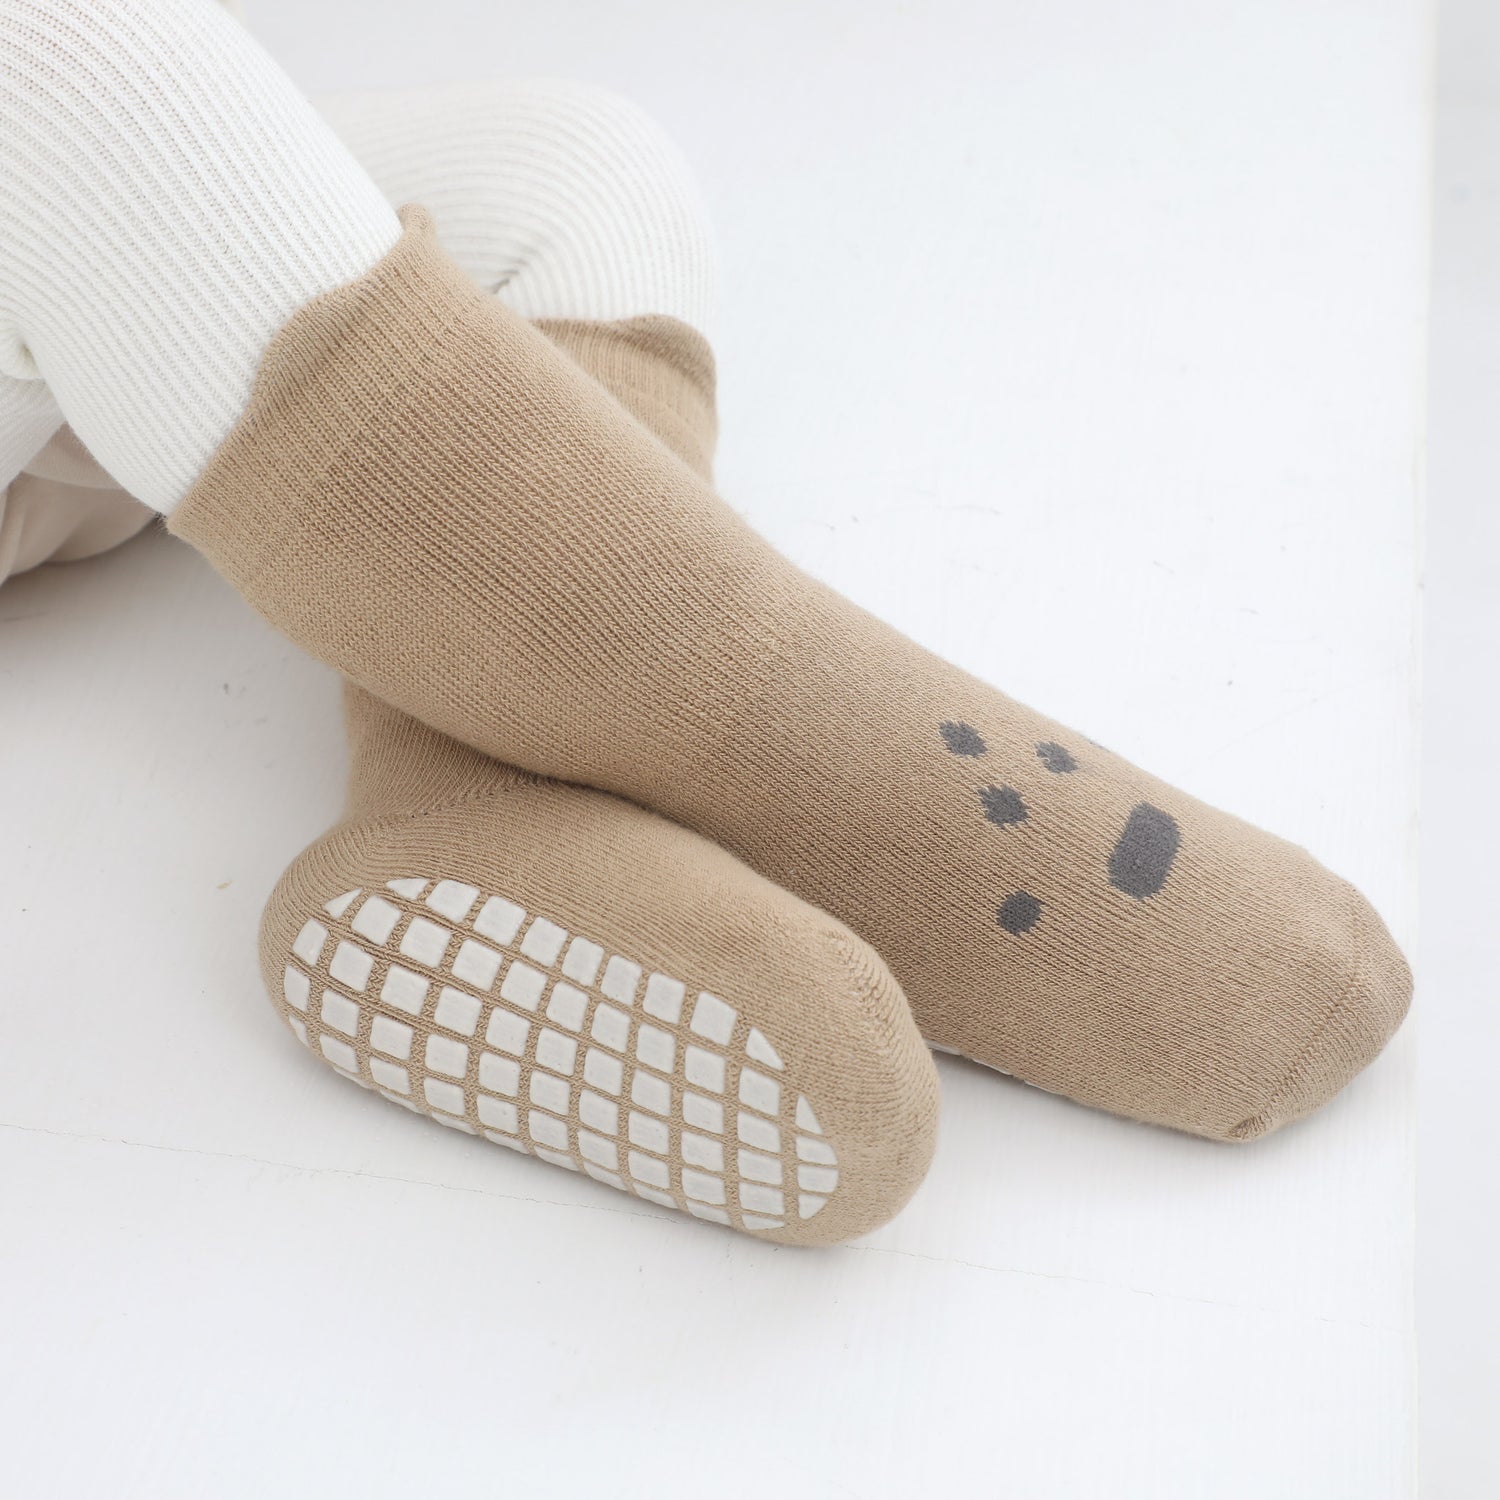 Bright, fun toddler grip socks ensuring safety.